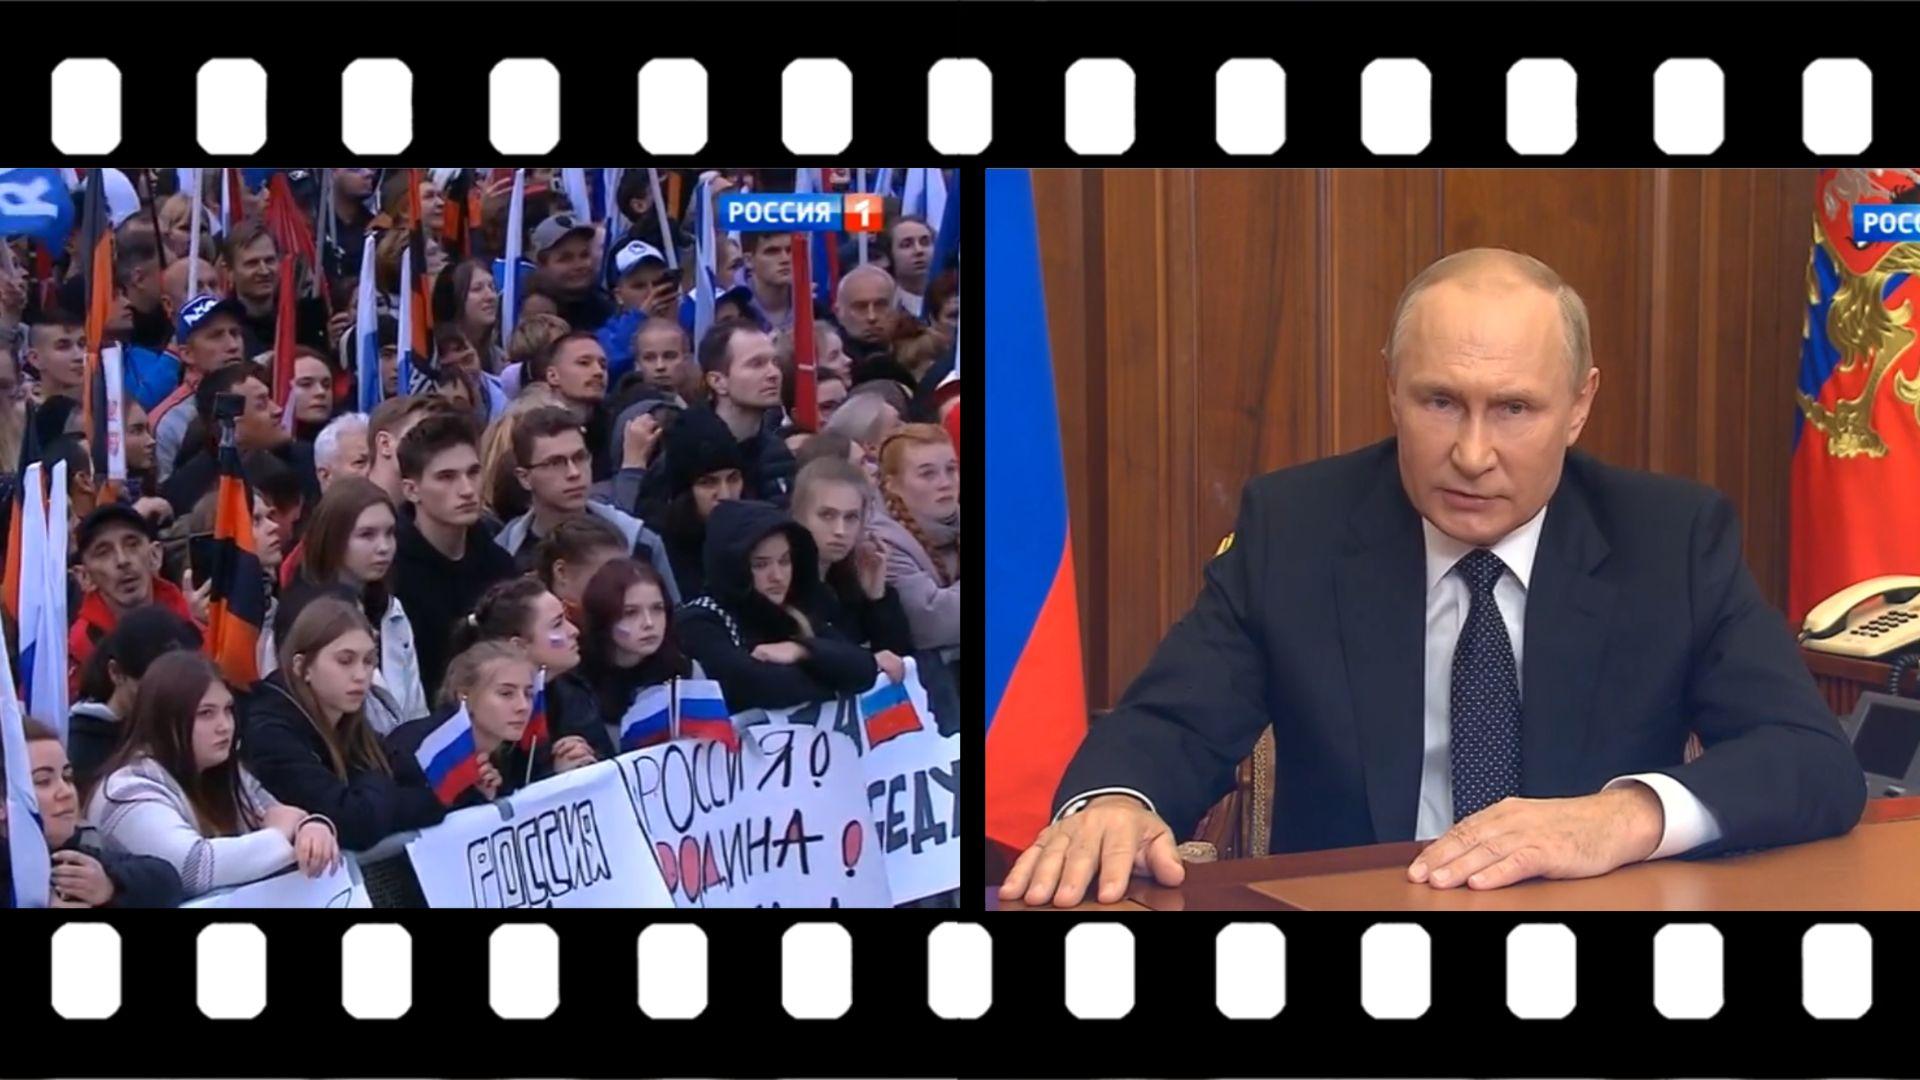 Zestawienie zdjęć: młodzi ludzie z flagami Rosji i Putin